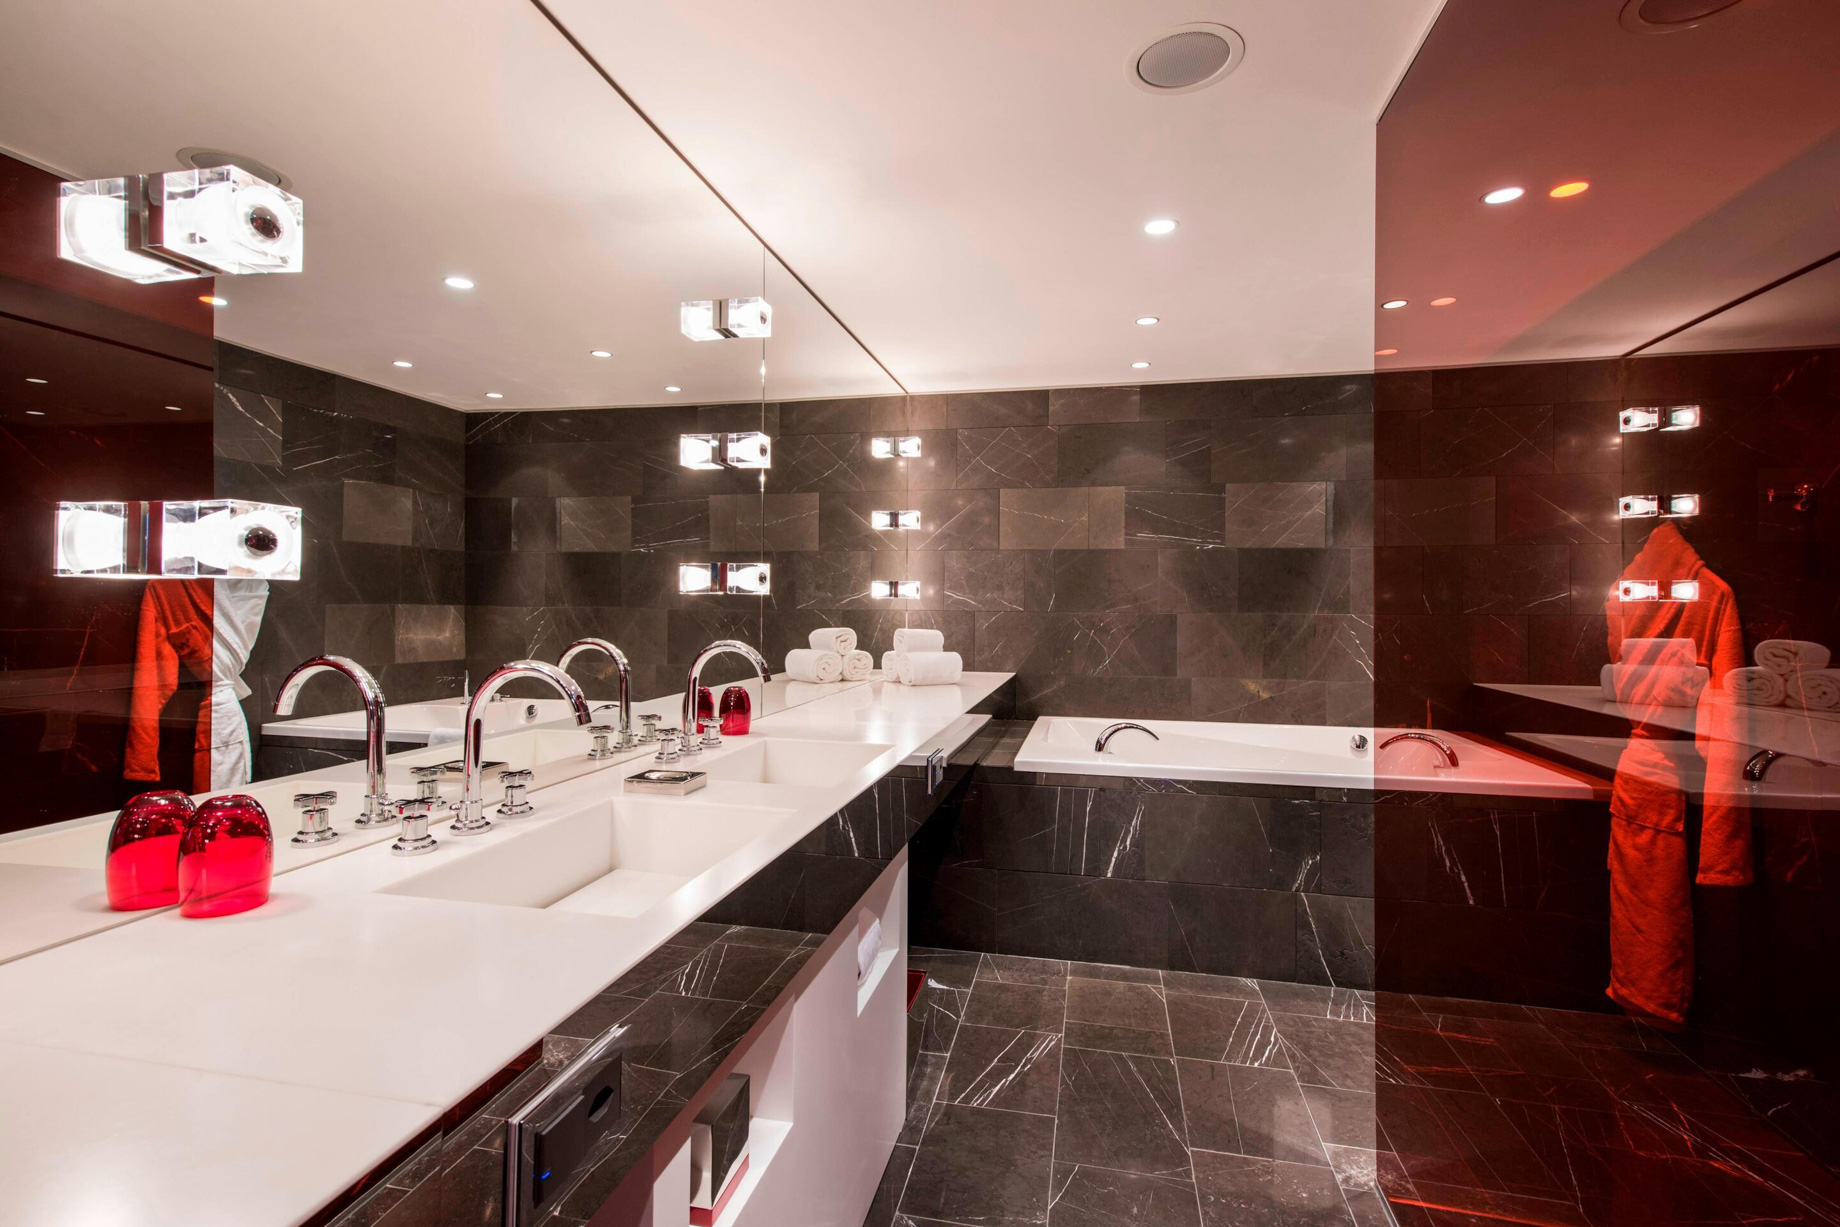 W Verbier Hotel - Verbier, Switzerland - WOW Suite Bathroom Vanity